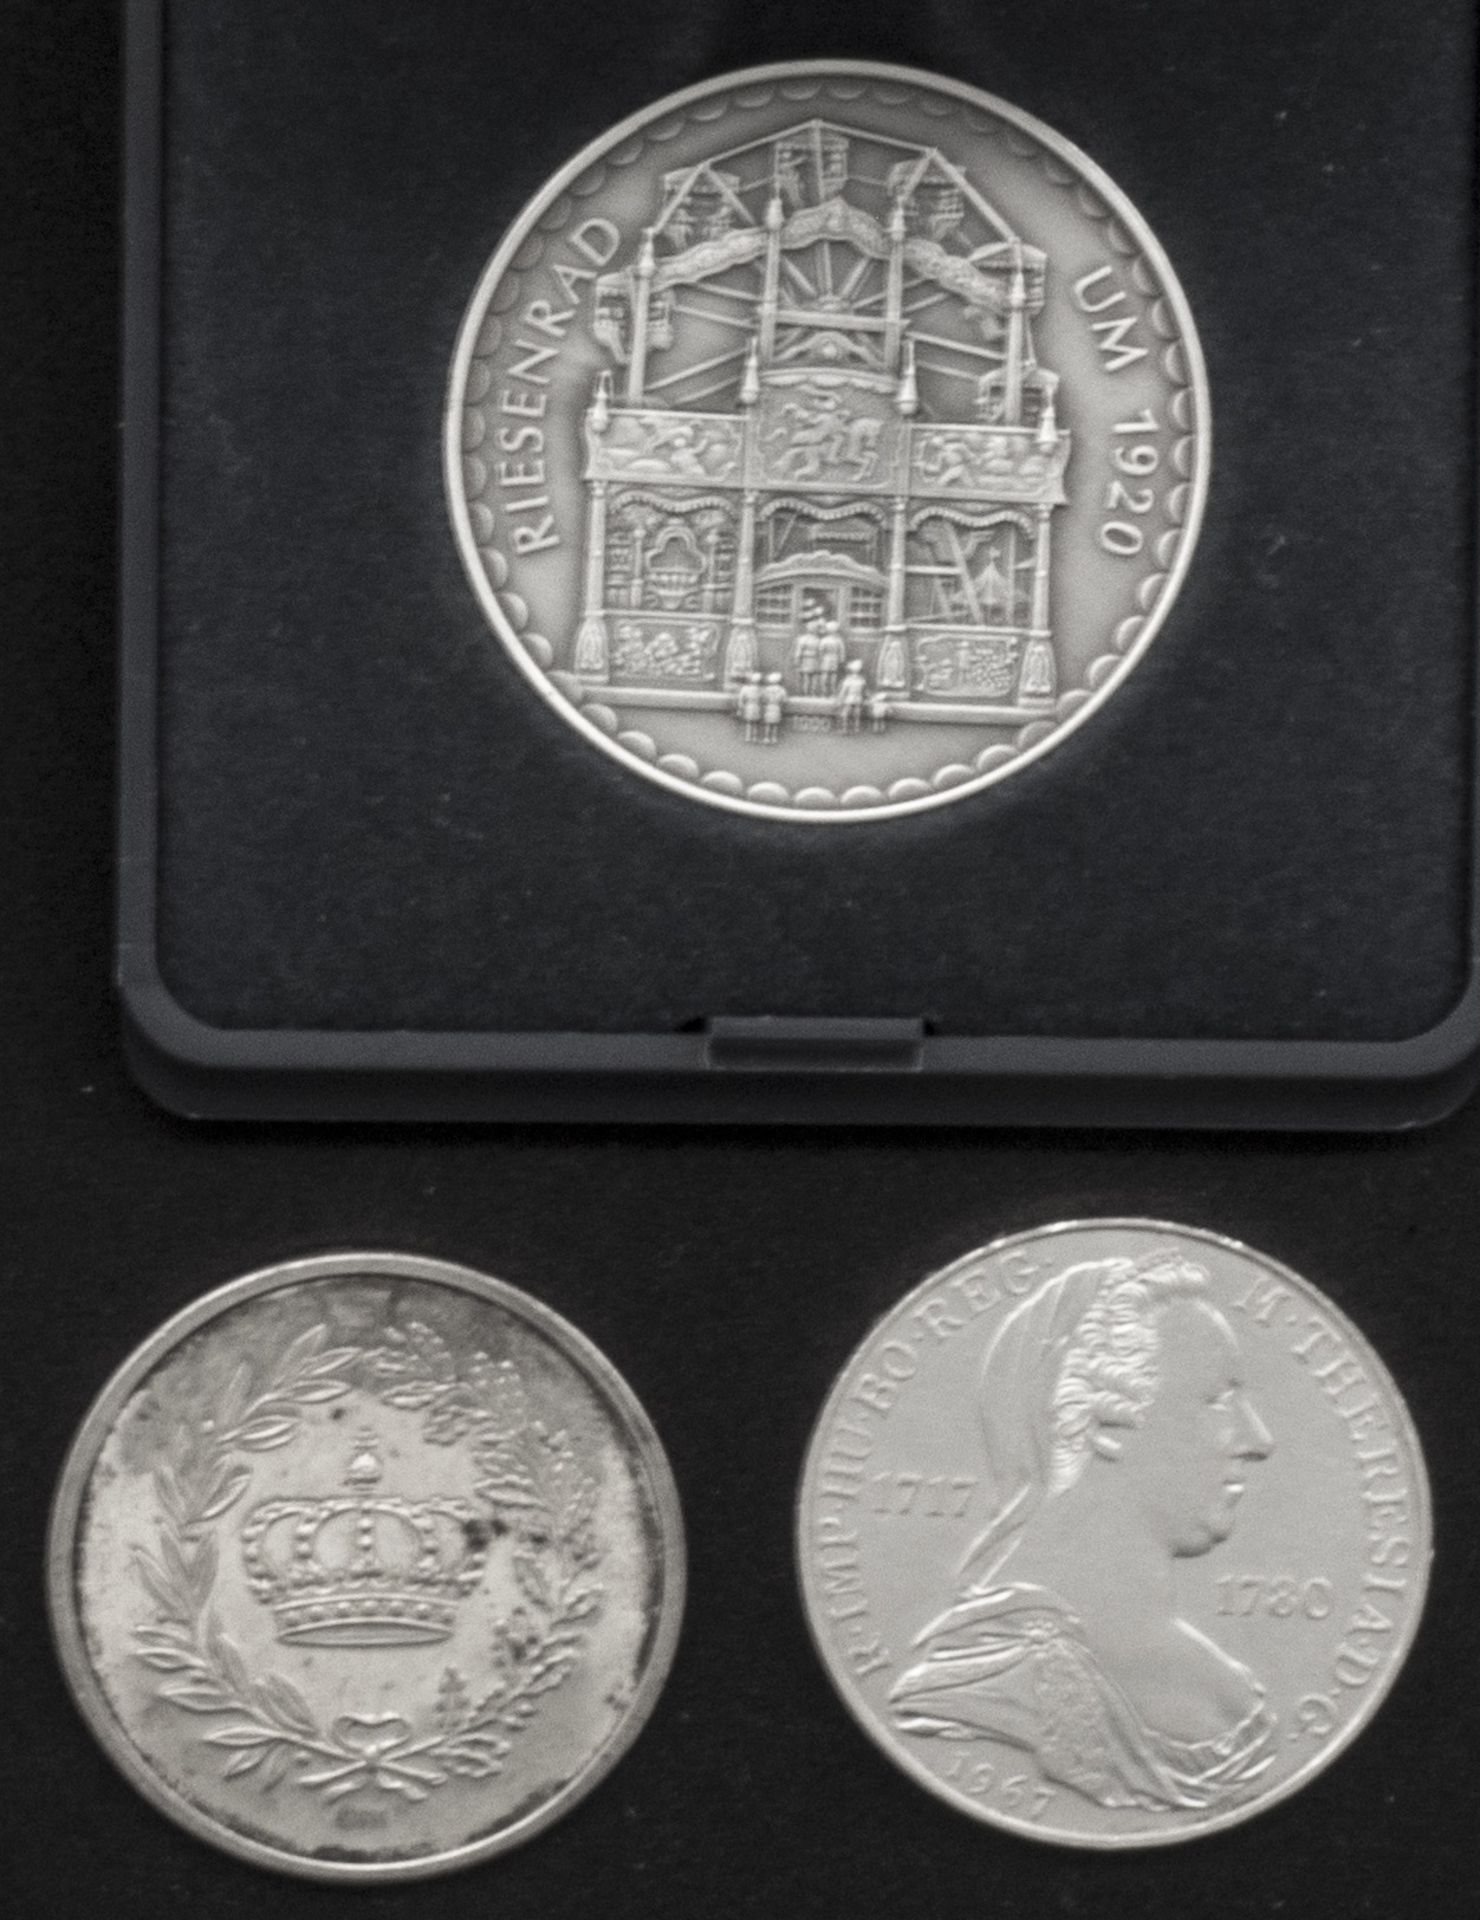 Lot Silbermedaillen, bestehend aus:"1. Schausteller - Taler 1987", "Ludwig II." und "Österreich 1967 - Image 2 of 2